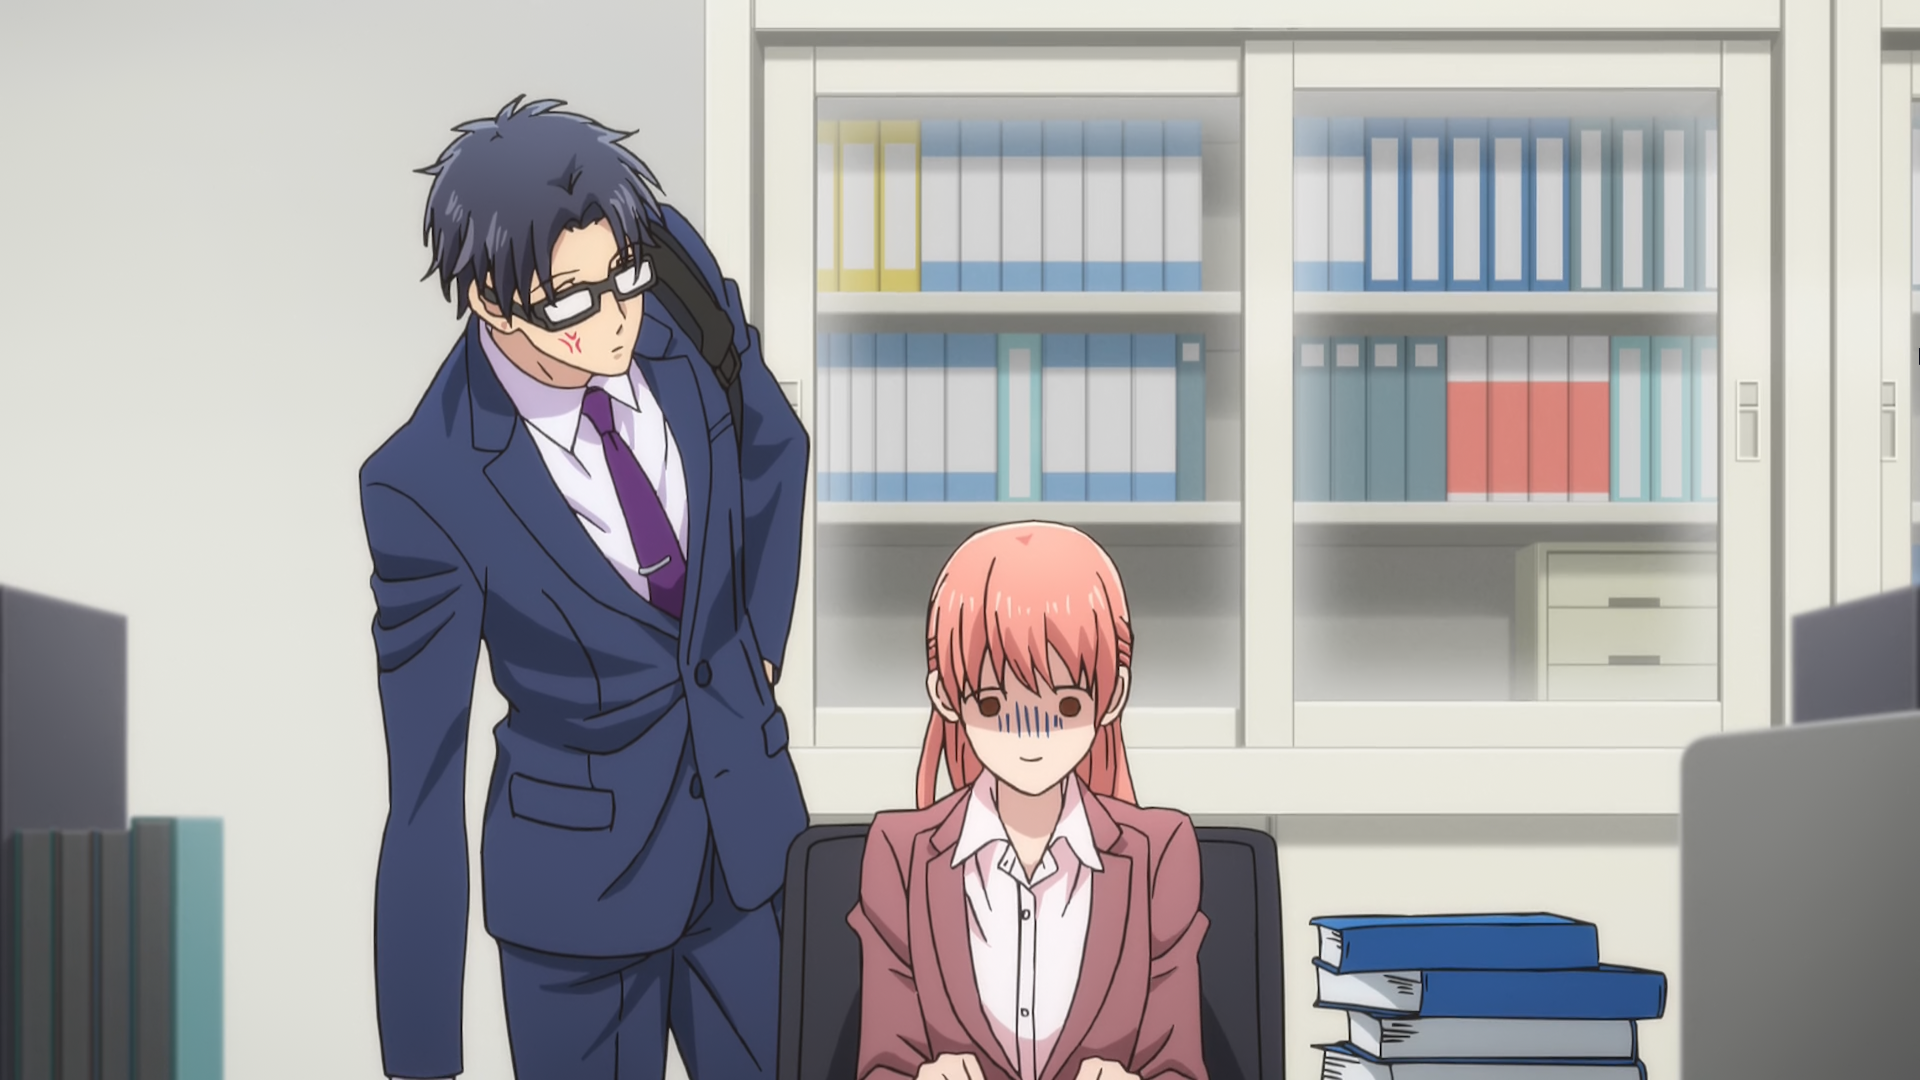 TV Anime 'Wotaku ni Koi wa Muzukashii' Gets OVA 